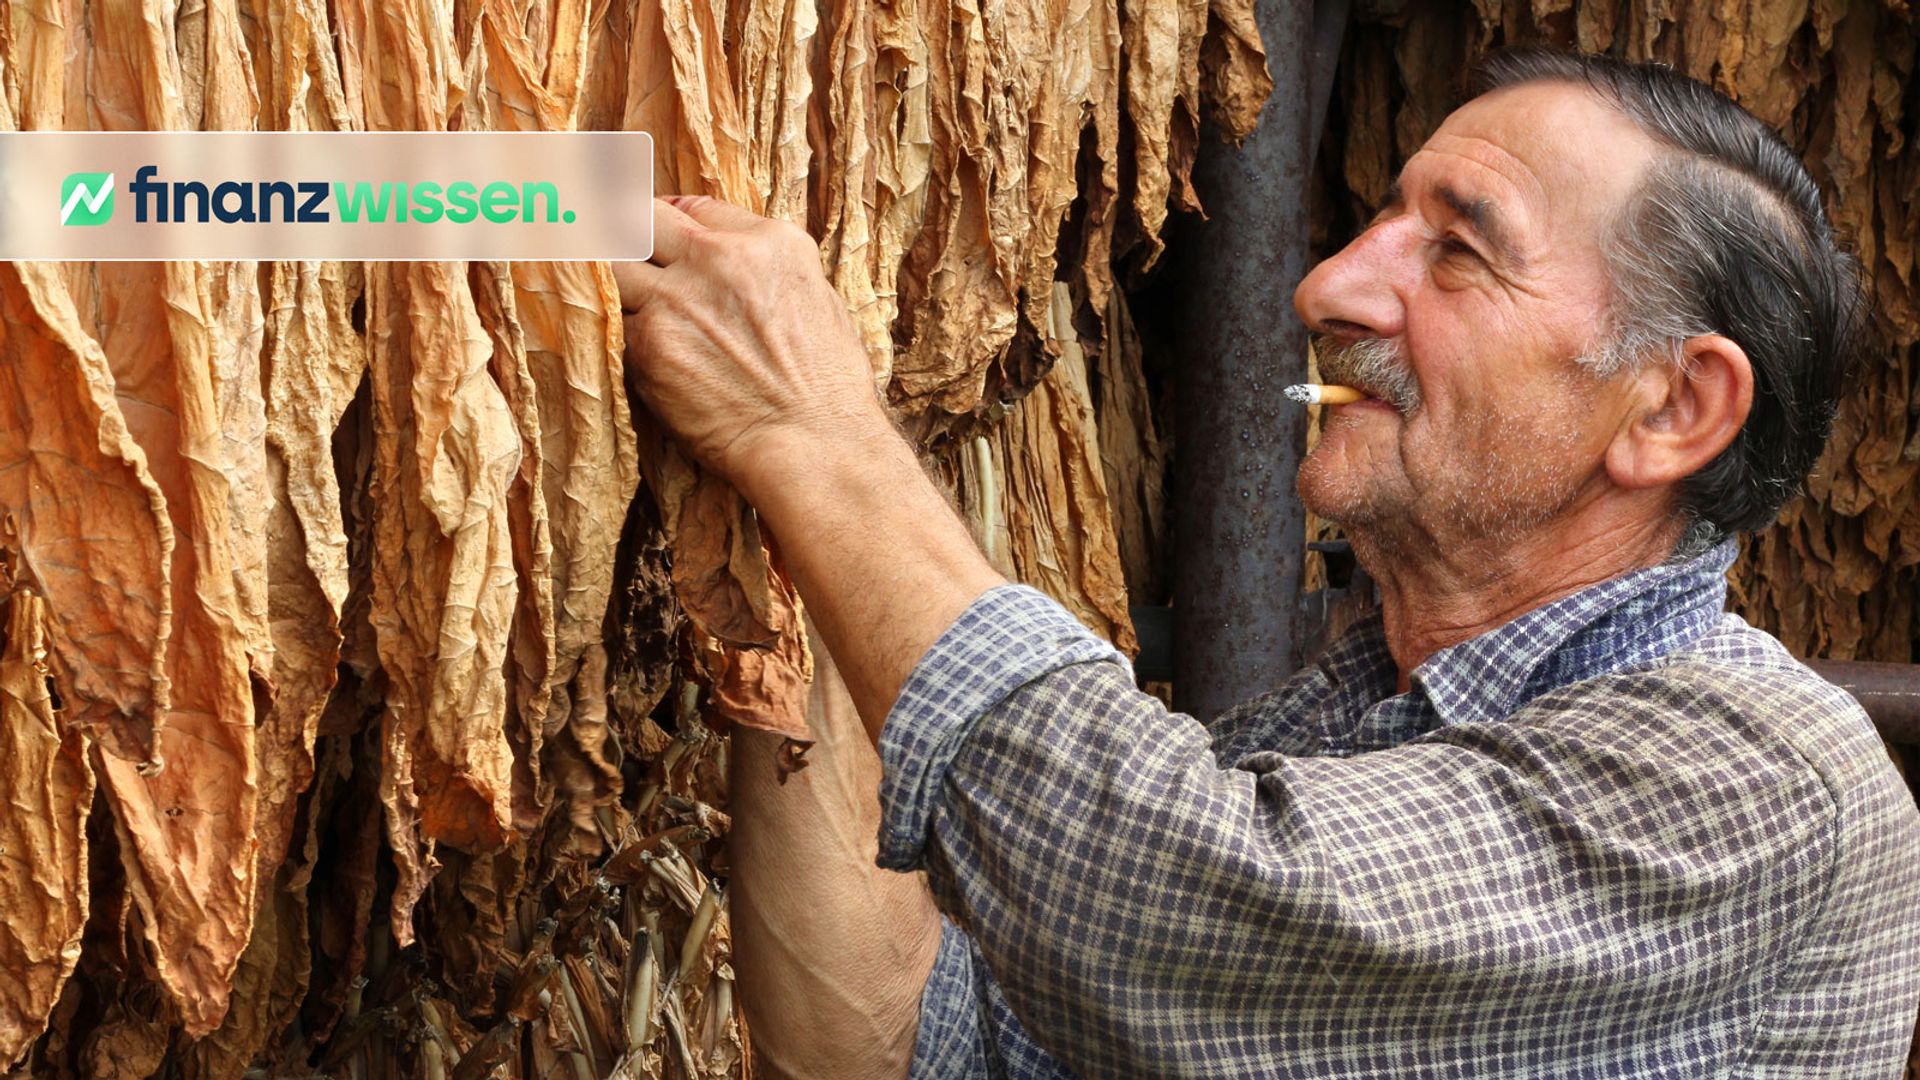 Mann erntet getrockneten Tabak für Tabak-Aktiengesellschaft